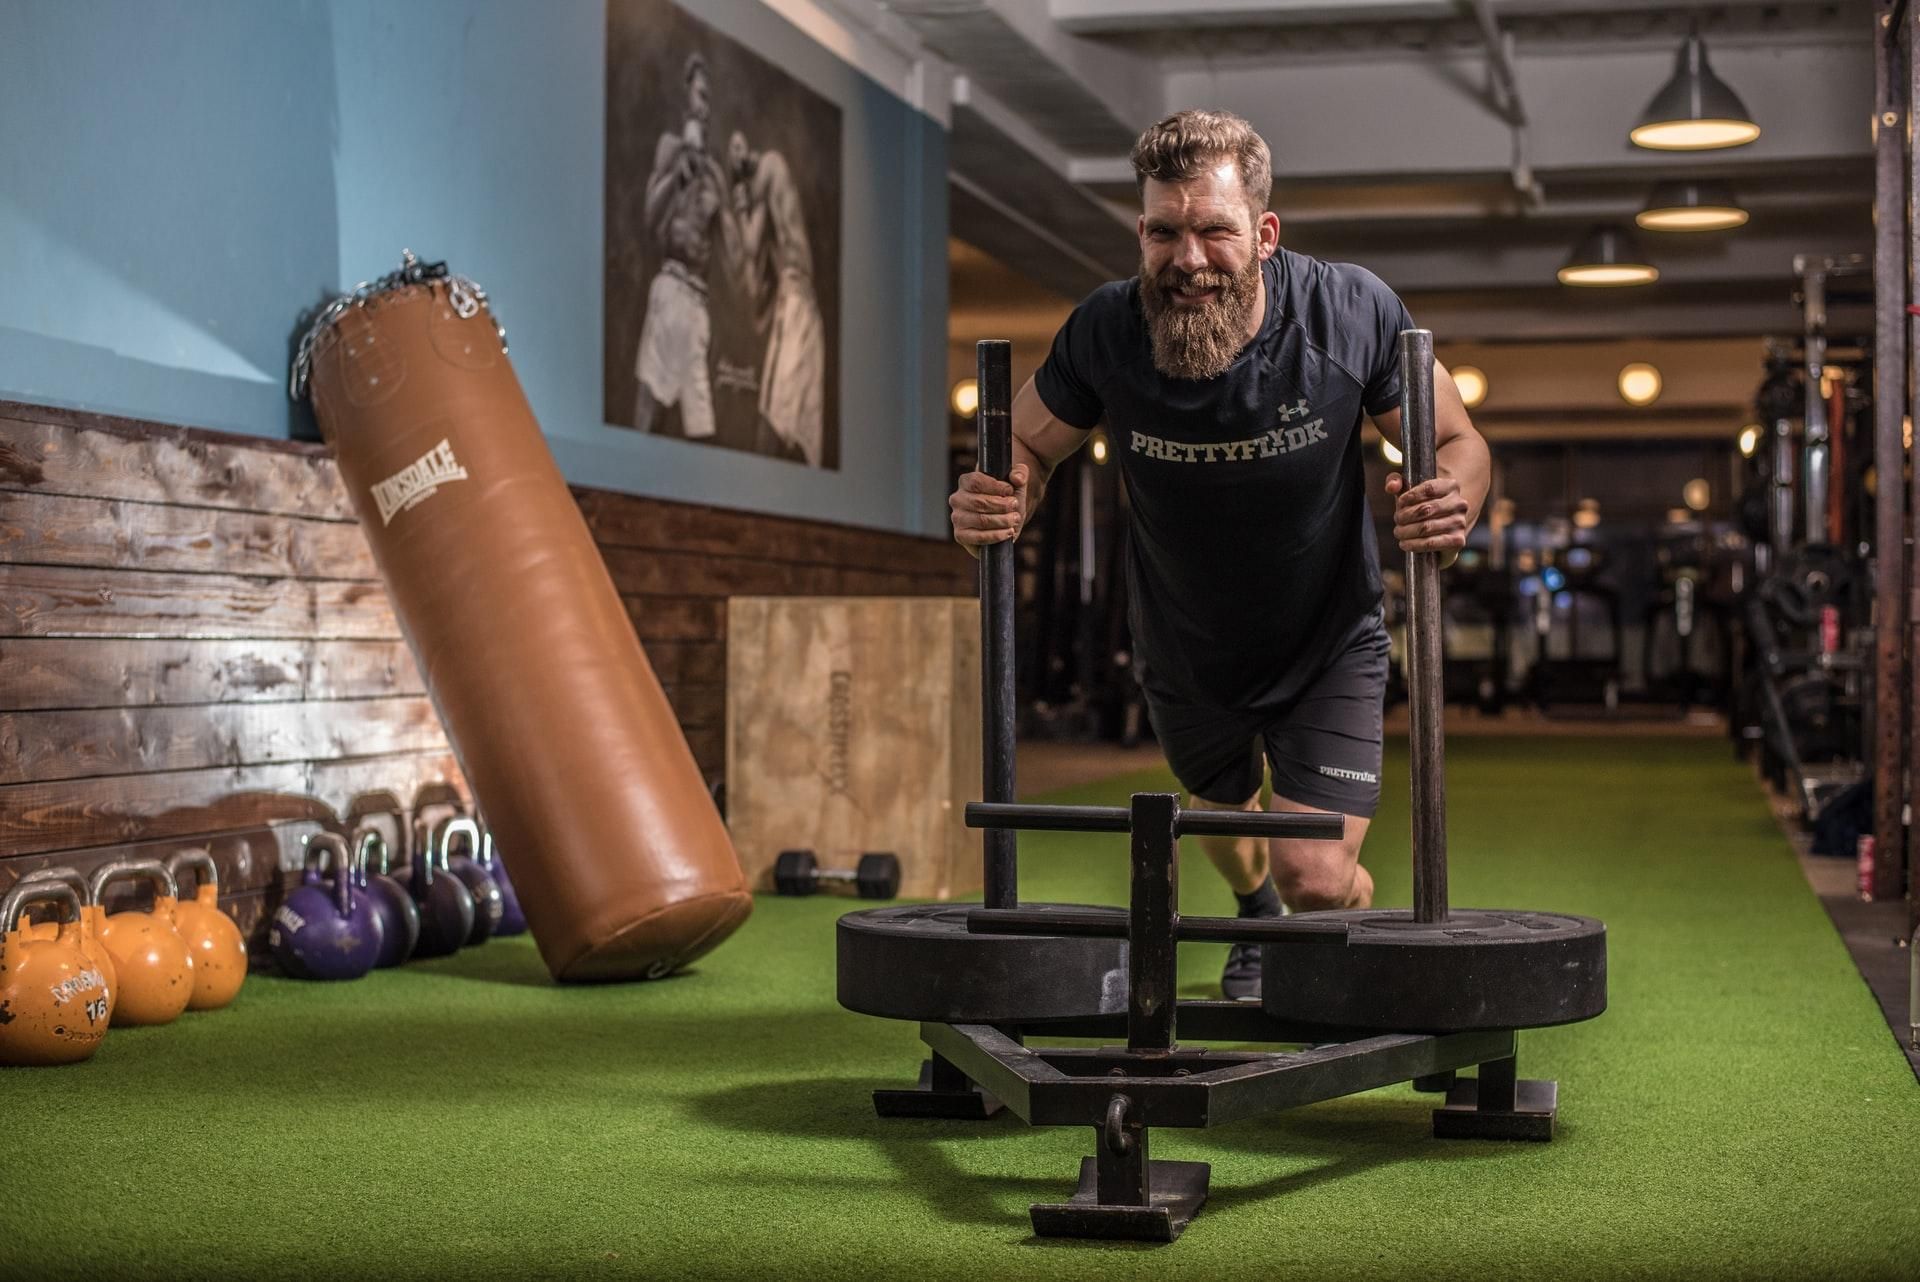 Измени свою жизнь и тело за 30 дней: вызов от звездного фитнес-тренера - Men